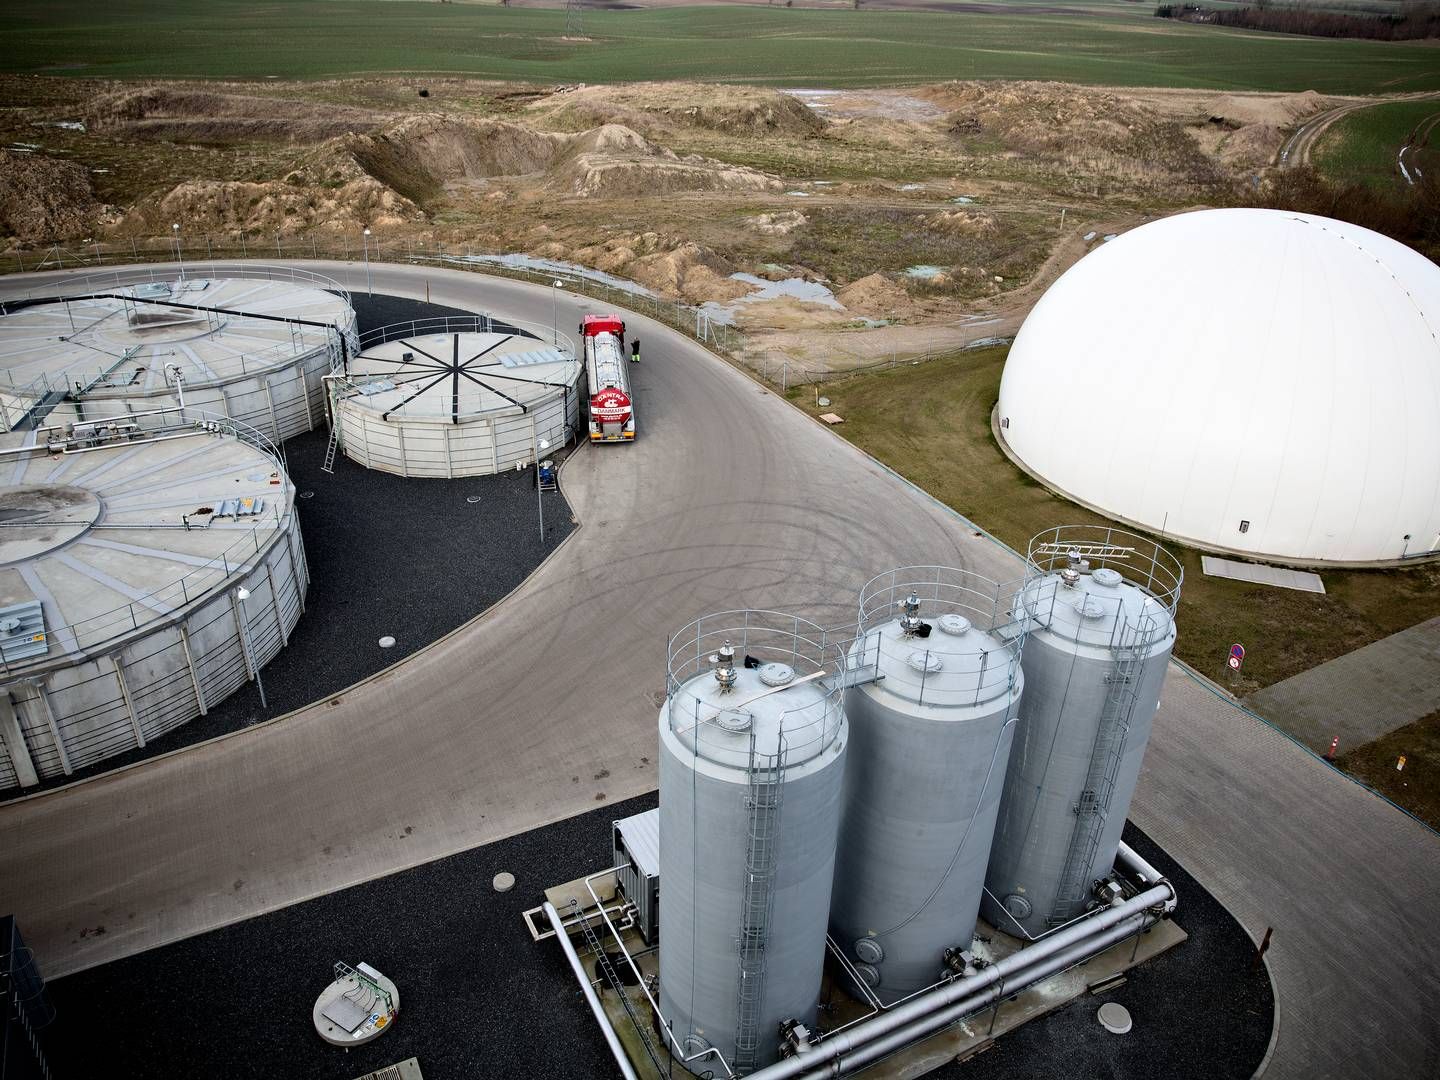 Eks-borgmester erkender fejl i sag om udvidelse af biogasanlæg. | Foto: Joachim Adrian